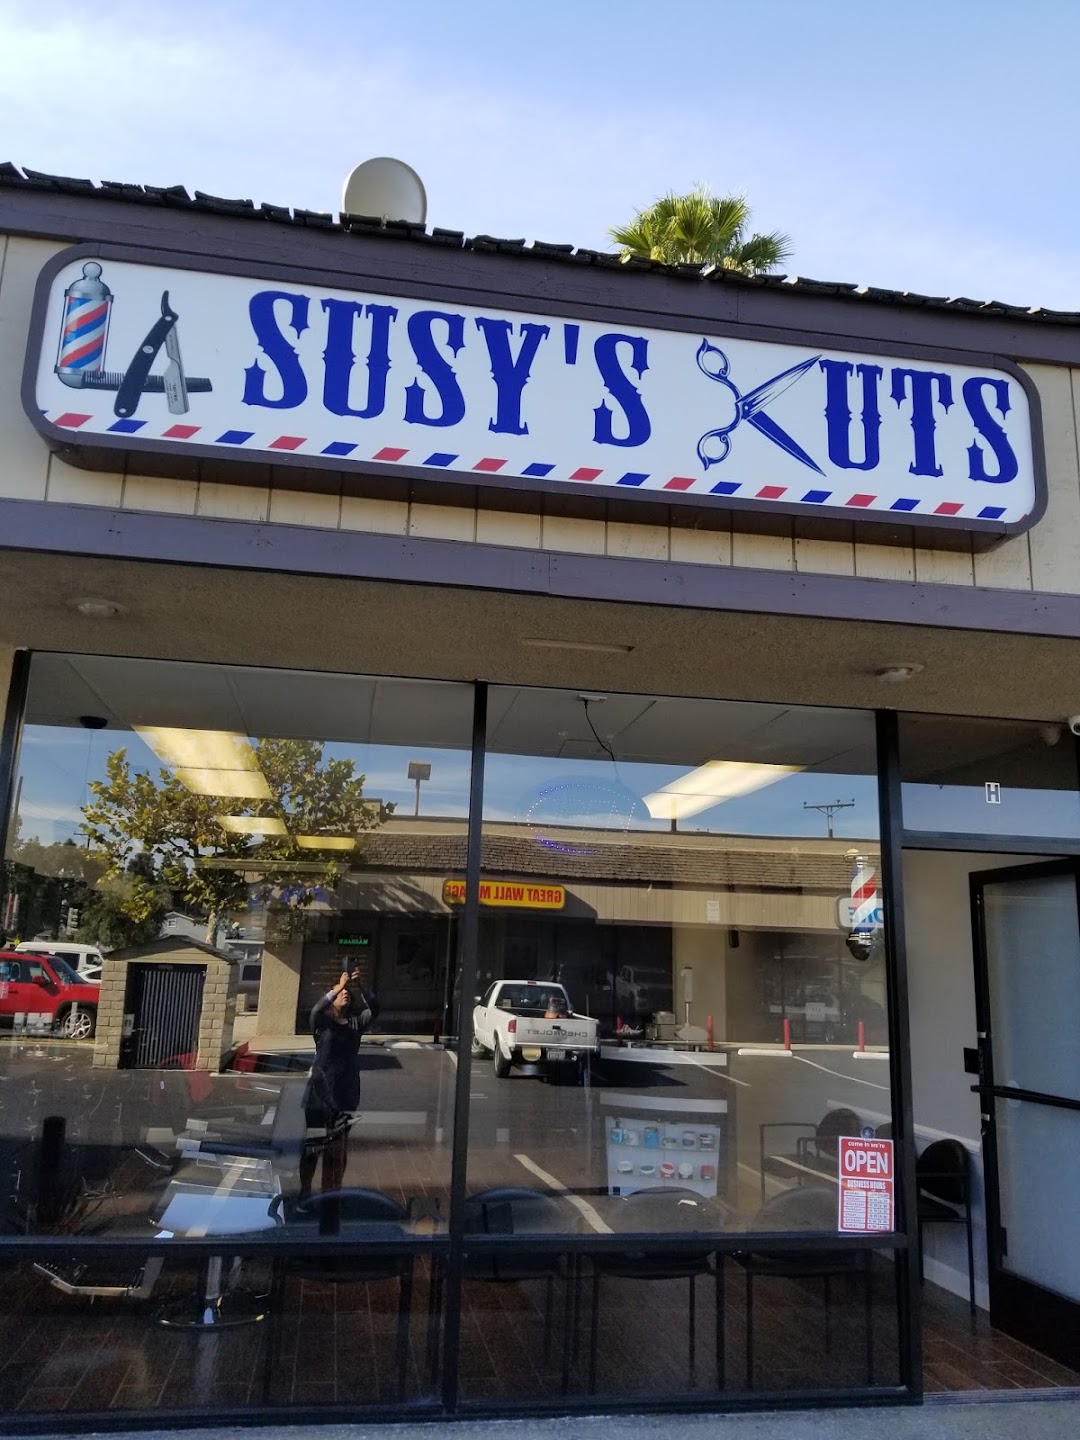 LA Susys Cuts